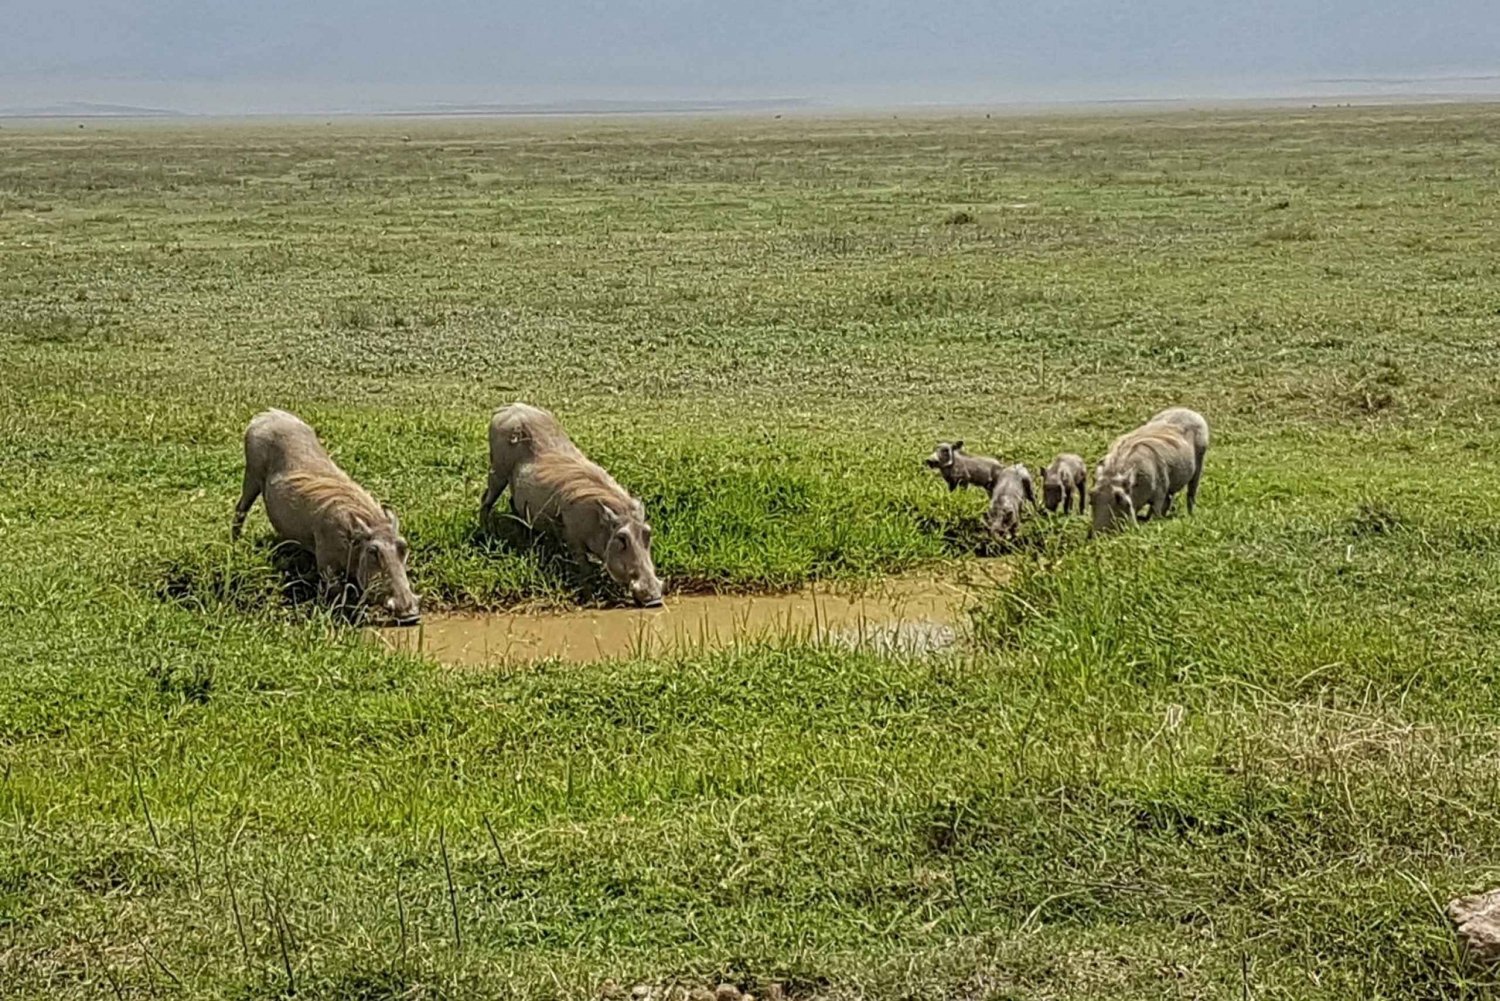 Arusha: 4-Day Serengeti and Ngorongoro Camping Safari